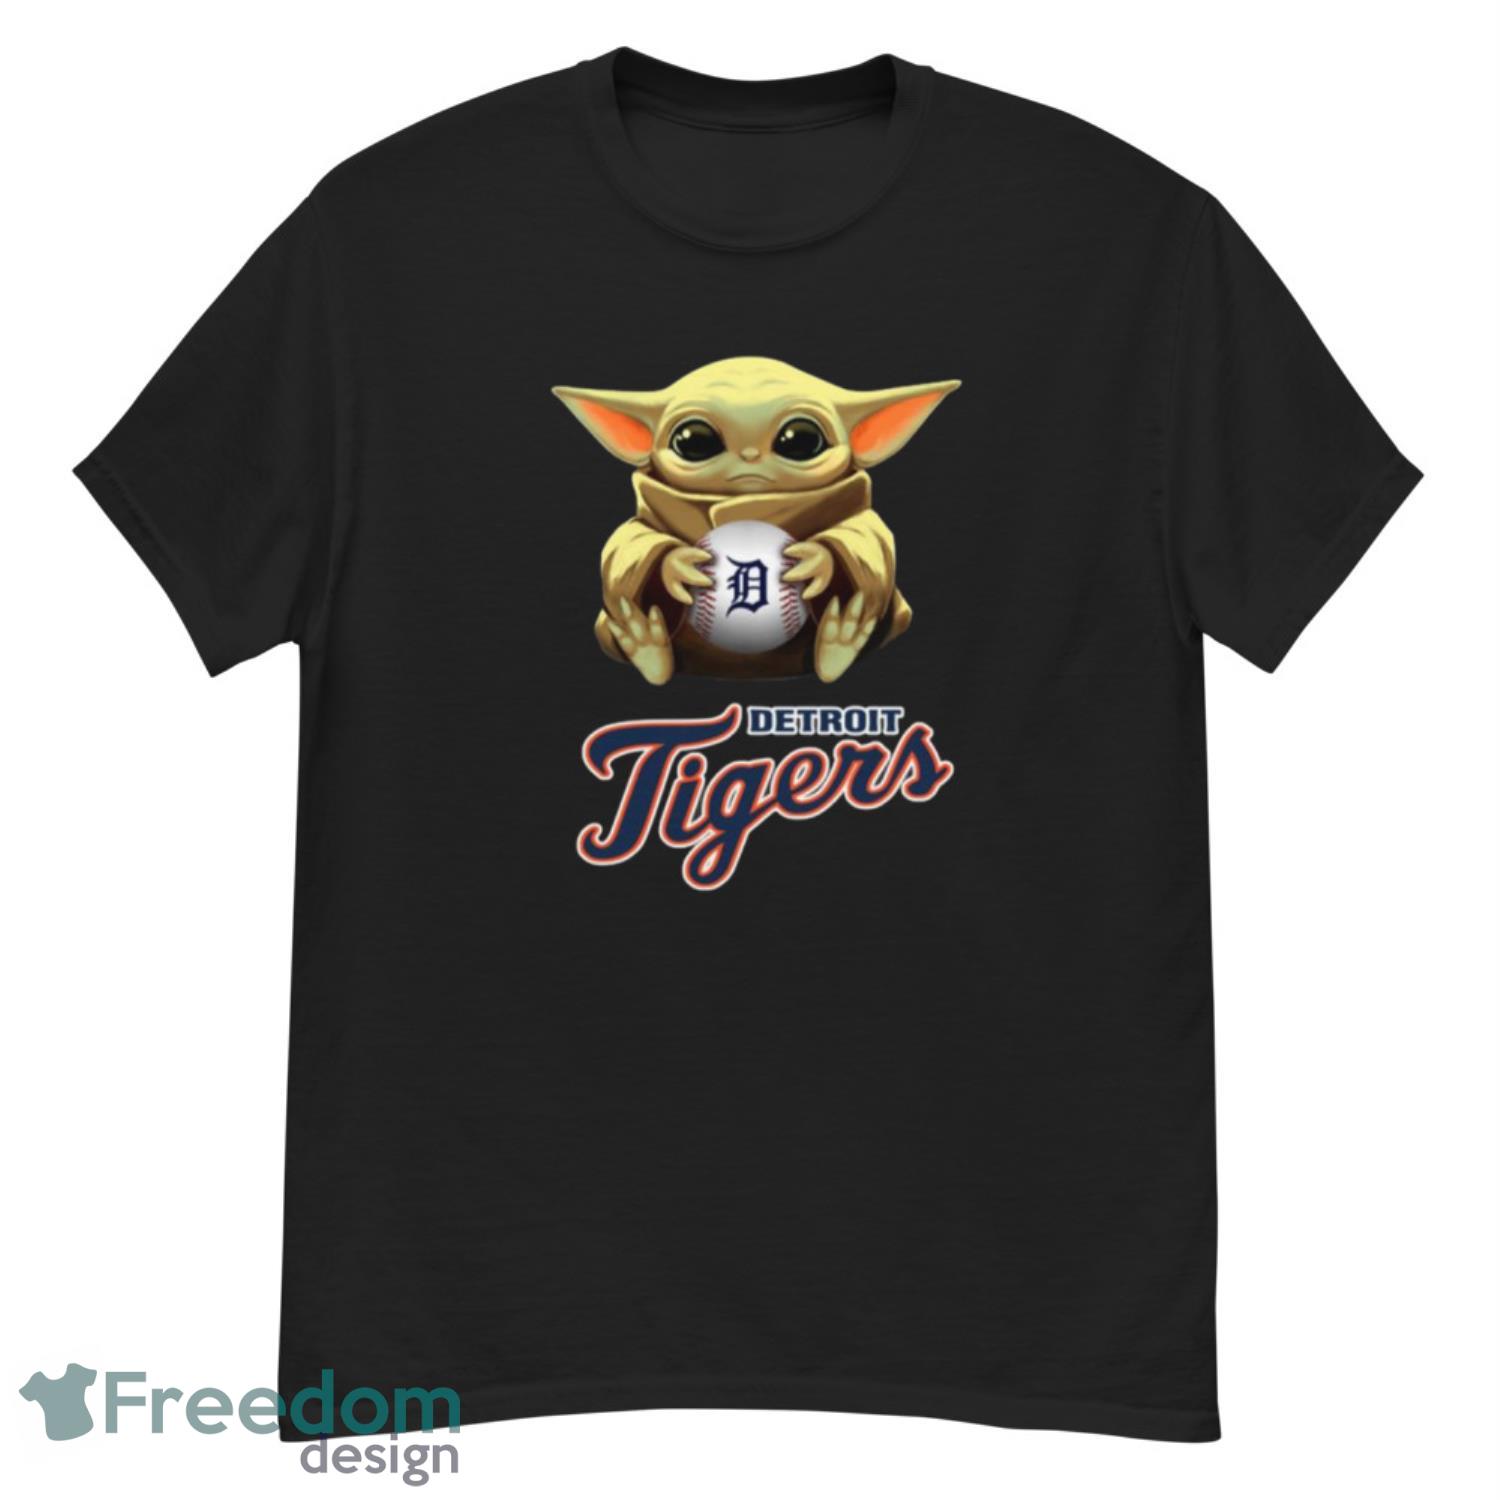 Cleveland Indians MLB Youth Size 7 Shirt